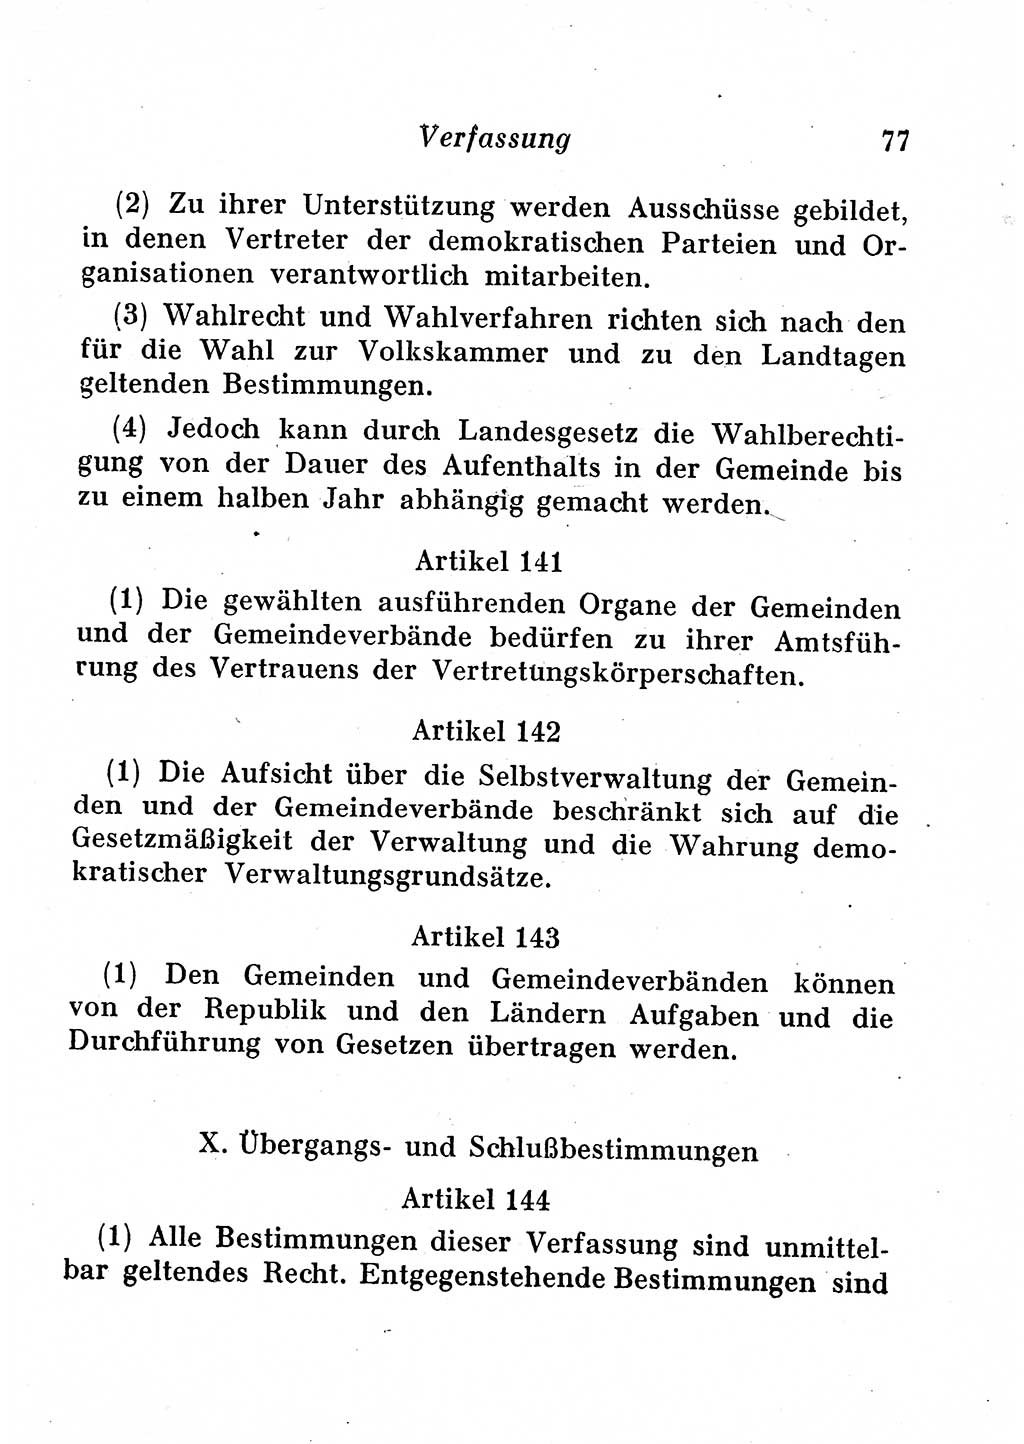 Staats- und verwaltungsrechtliche Gesetze der Deutschen Demokratischen Republik (DDR) 1958, Seite 77 (StVerwR Ges. DDR 1958, S. 77)